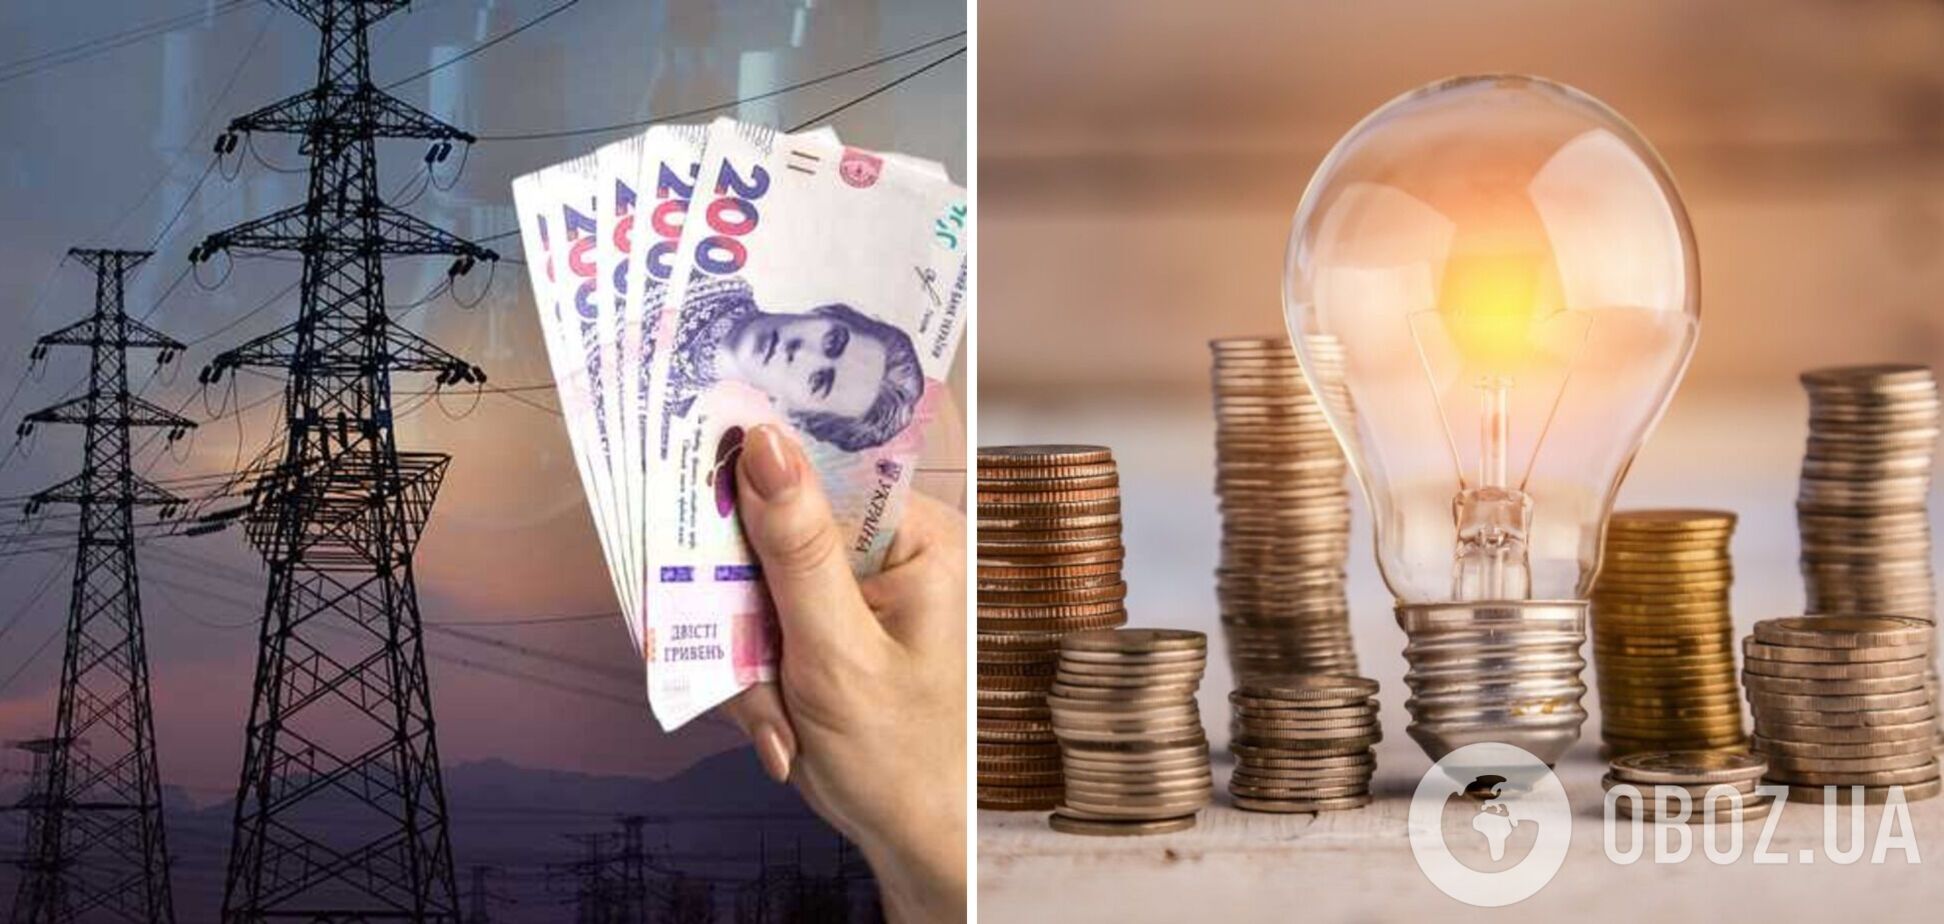 'Энергоатом' недофинансирует льготные тарифы на электроэнергию для населения – Юрий Бойко